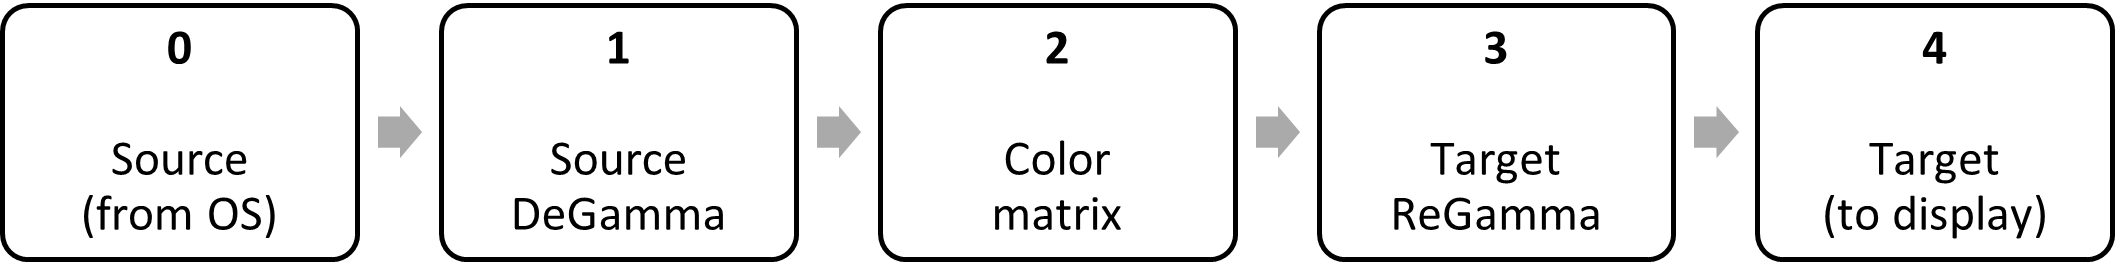 блок-схема: исходная дегамма, цветовая матрица, целевая регамма